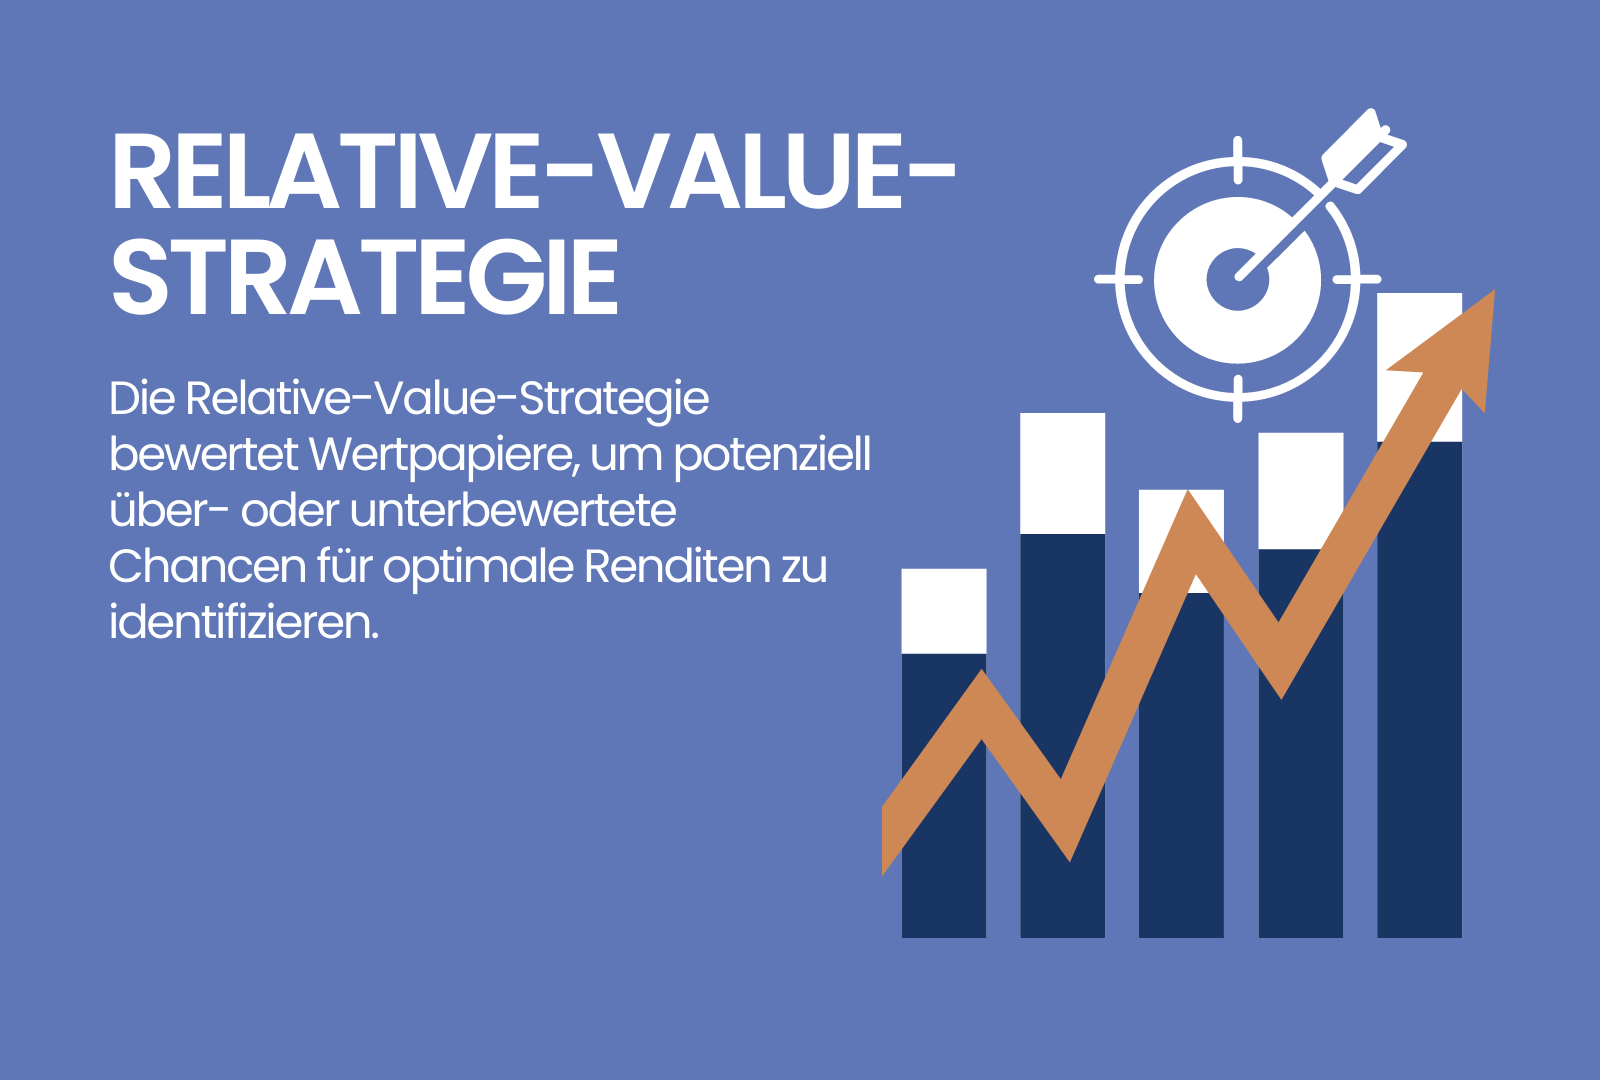 Relative-Value-Strategie Definition & Erklärung